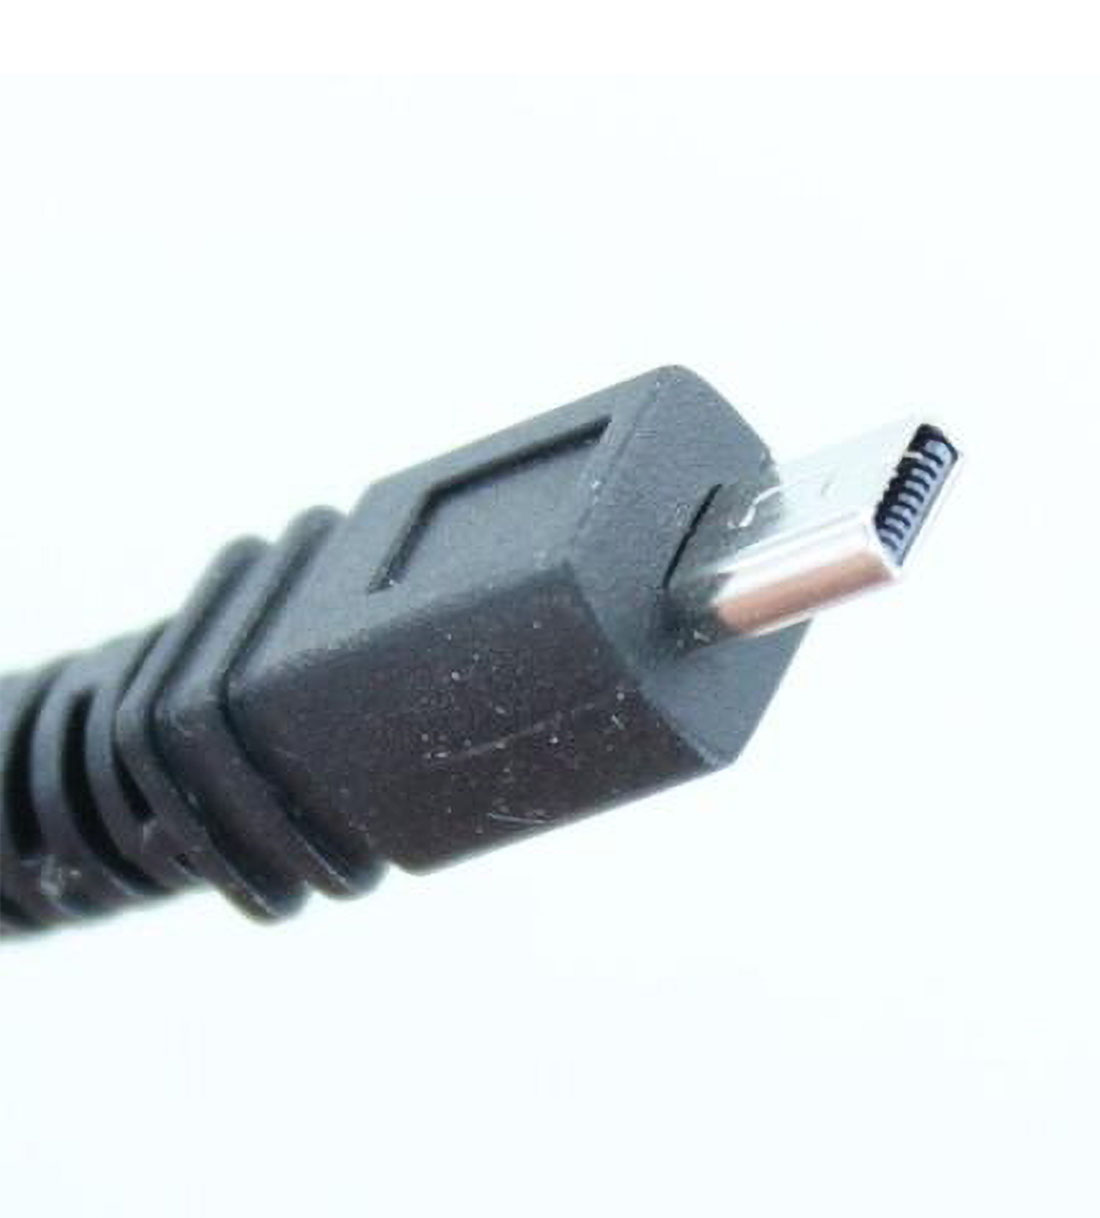 MOBILOTEC USB-Datenkabel kompatibel mit Fuji JX370 FinePix Fuji, schwarz Zubehör